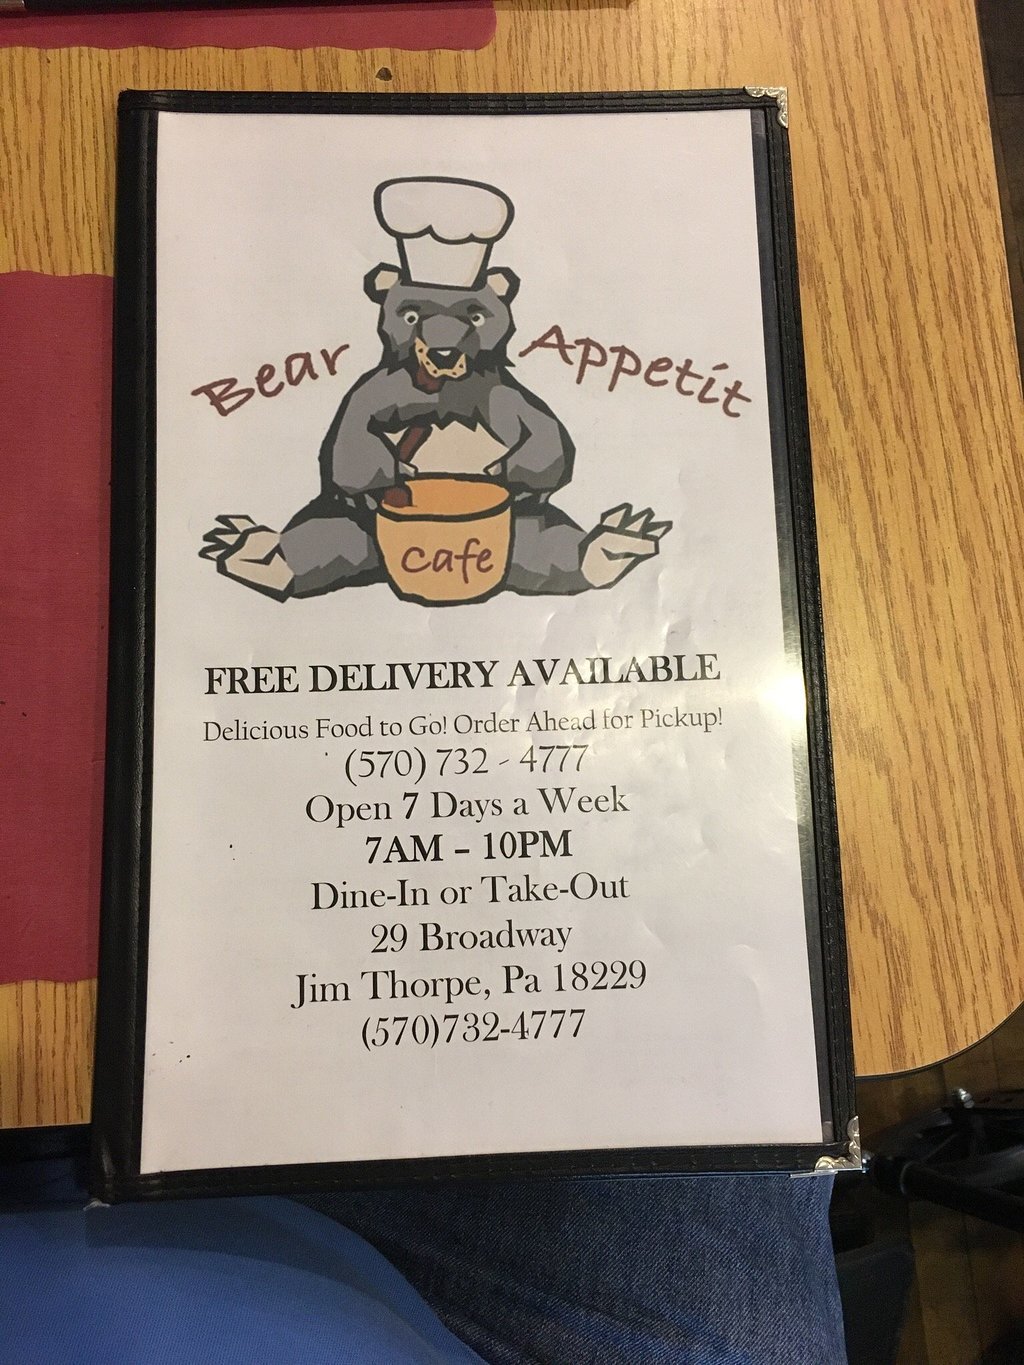 Bear Appetit Cafe